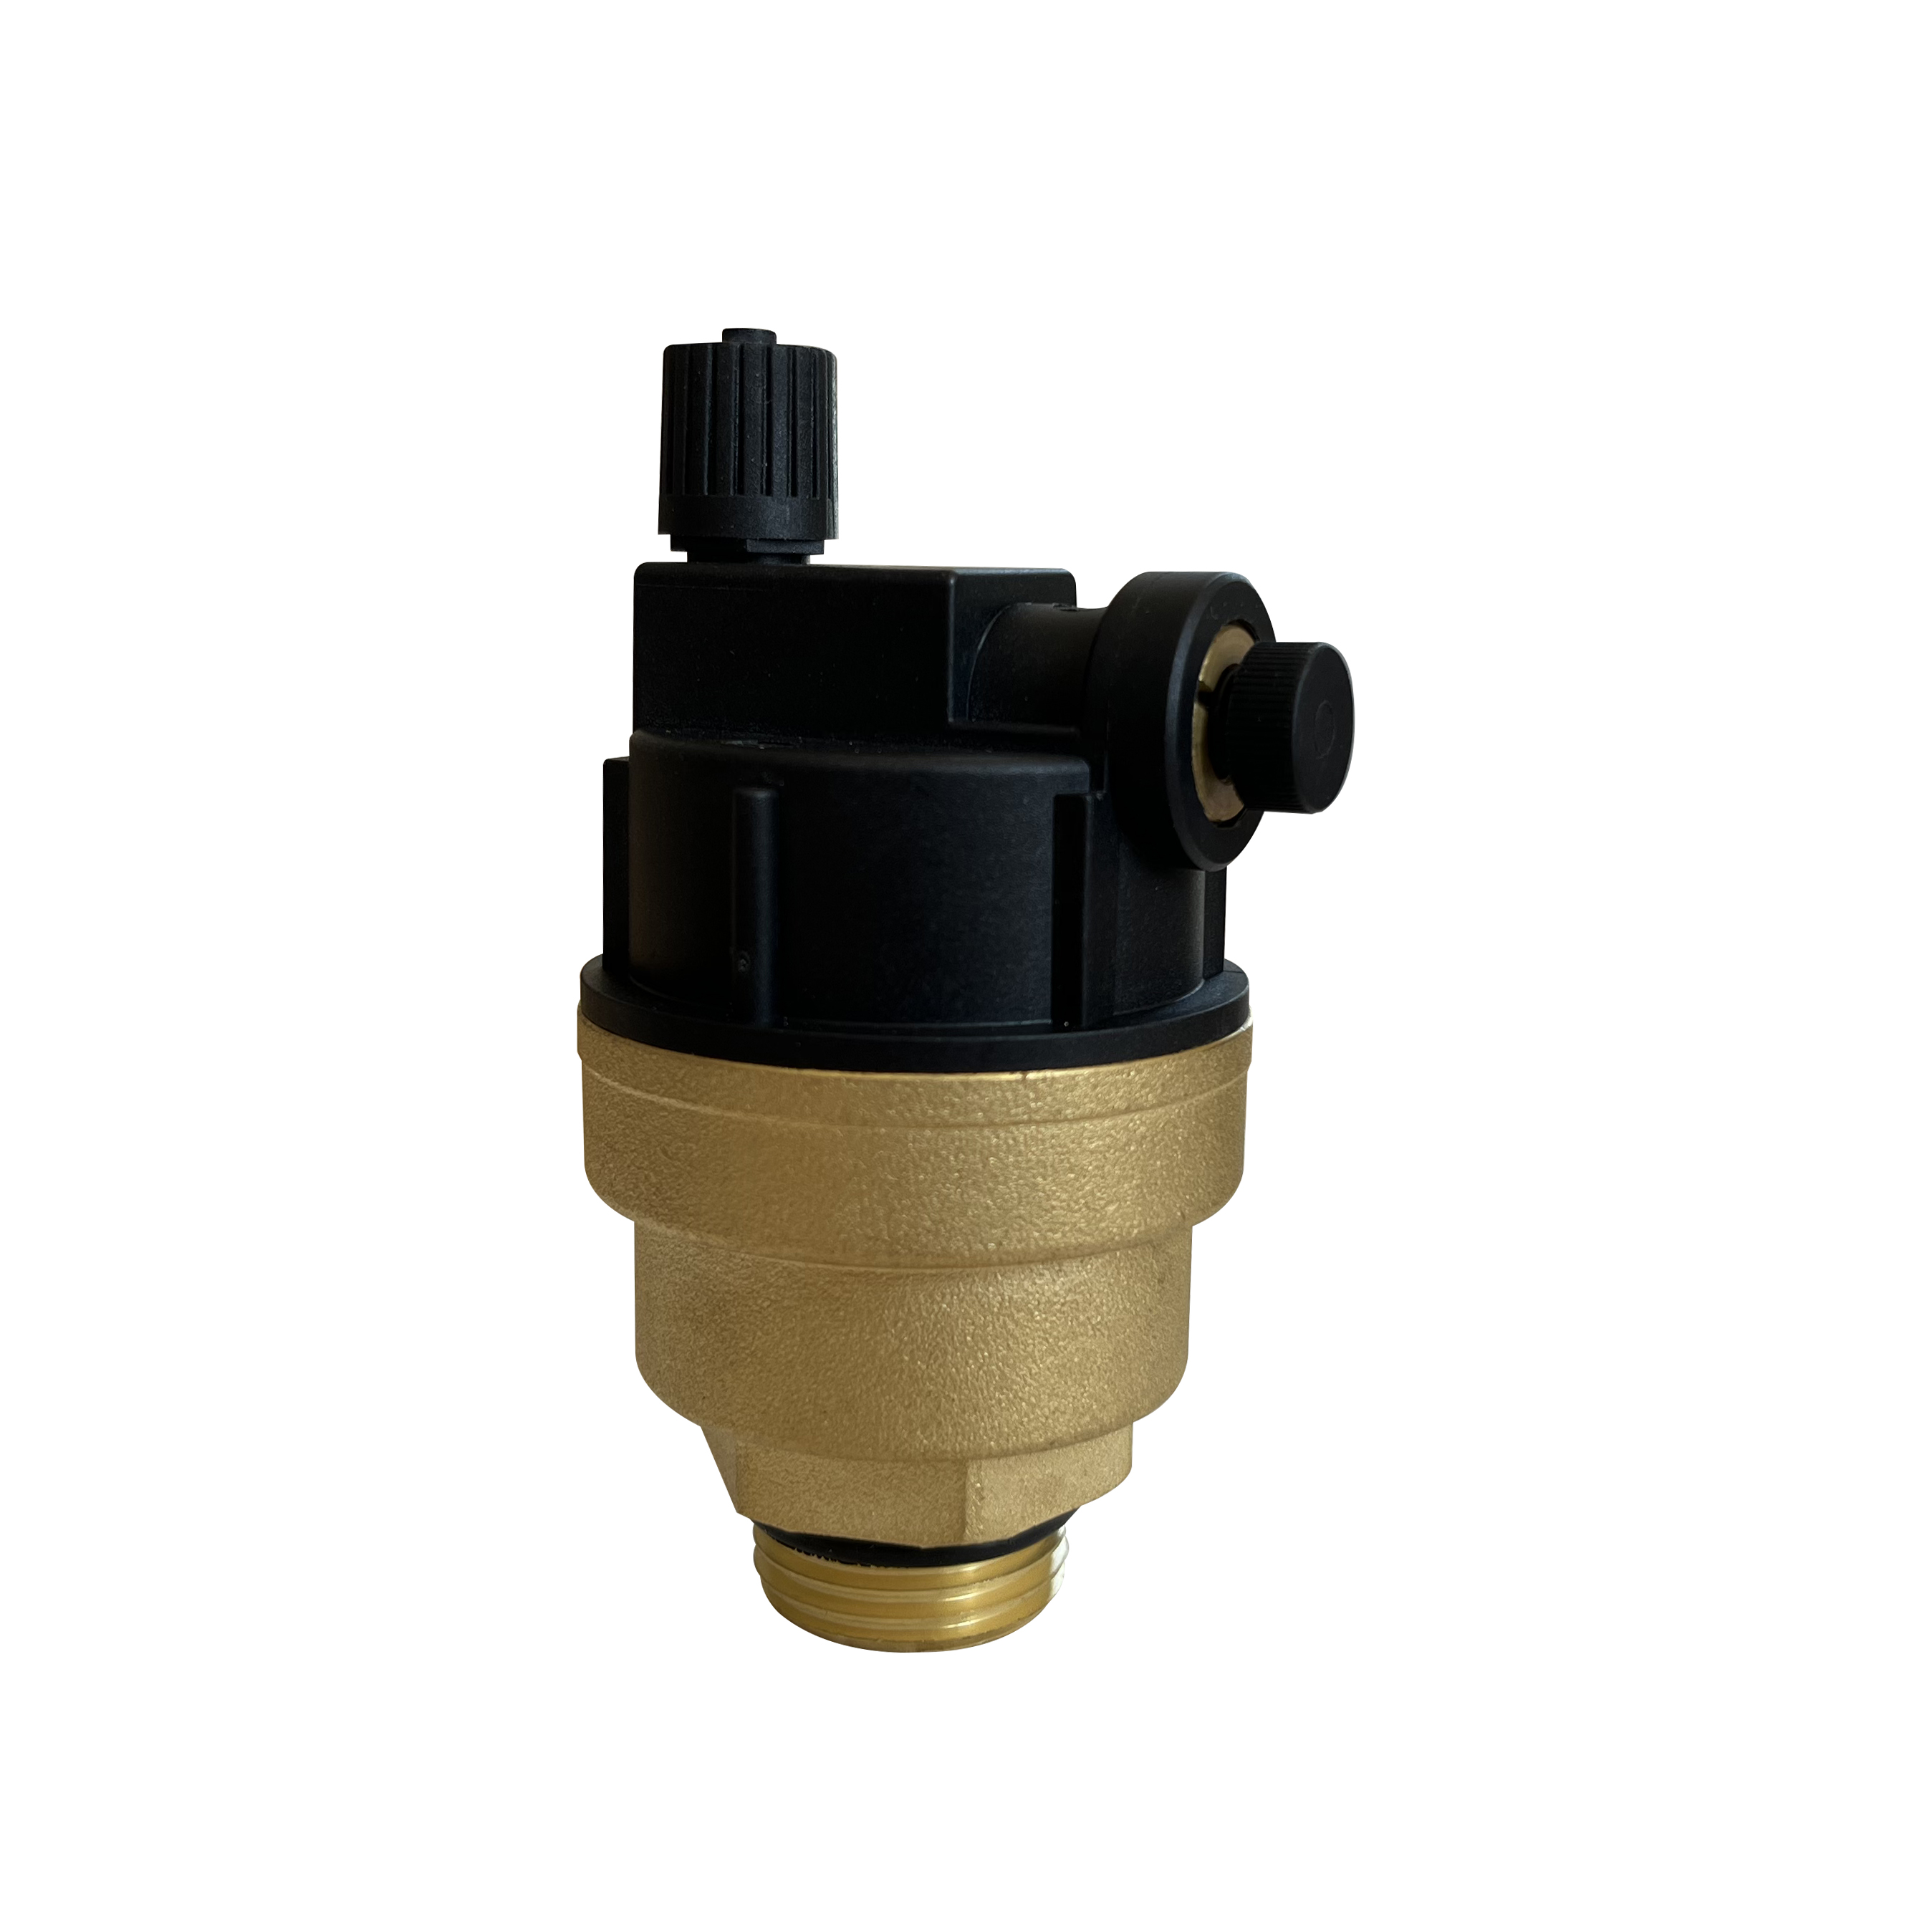 Exhaust valve HPQ-01S